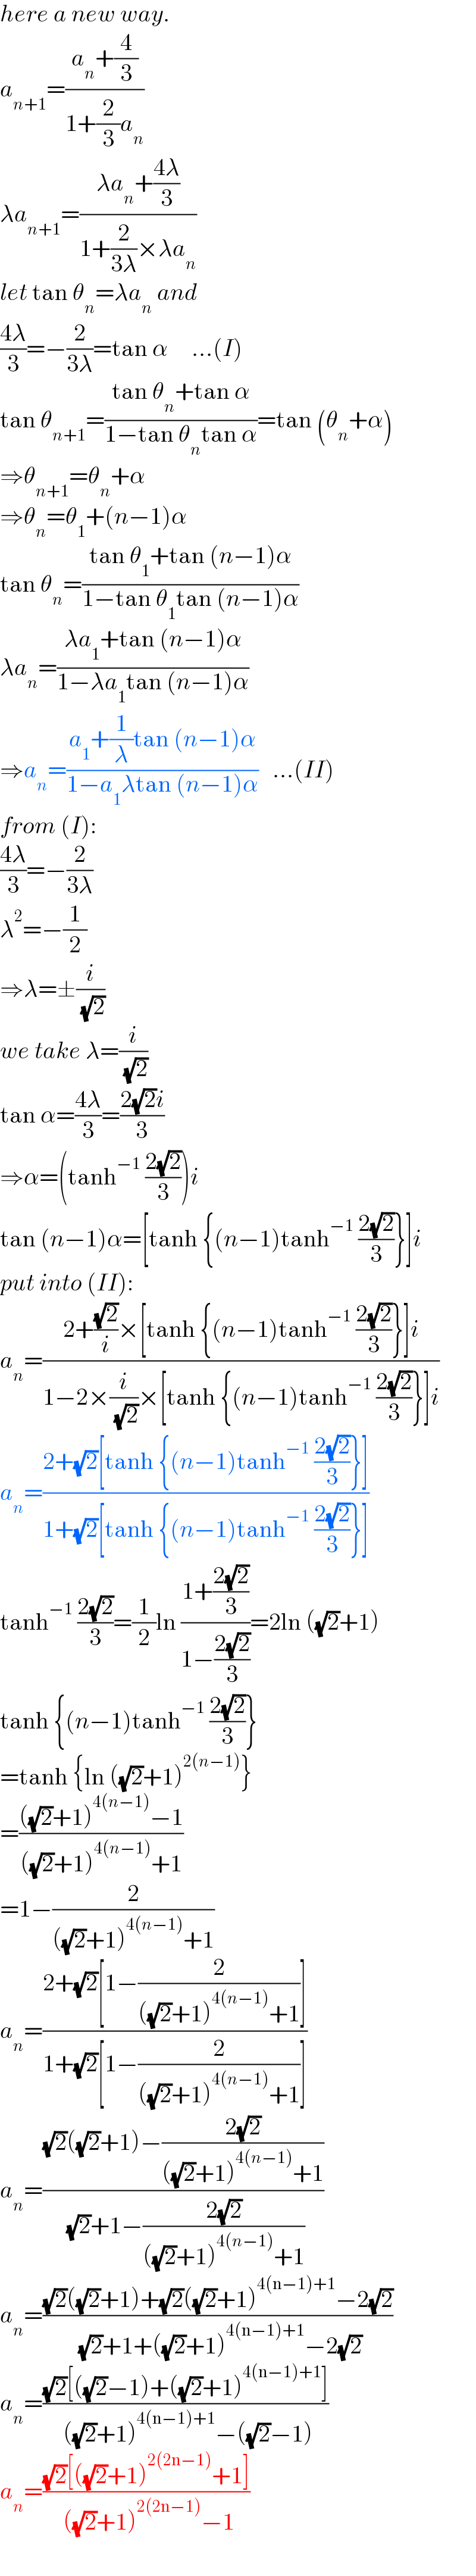 here a new way.  a_(n+1) =((a_n +(4/3))/(1+(2/3)a_n ))  λa_(n+1) =((λa_n +((4λ)/3))/(1+(2/(3λ))×λa_n ))  let tan θ_n =λa_n  and  ((4λ)/3)=−(2/(3λ))=tan α     ...(I)  tan θ_(n+1) =((tan θ_n +tan α)/(1−tan θ_n tan α))=tan (θ_n +α)  ⇒θ_(n+1) =θ_n +α  ⇒θ_n =θ_1 +(n−1)α  tan θ_n =((tan θ_1 +tan (n−1)α)/(1−tan θ_1 tan (n−1)α))  λa_n =((λa_1 +tan (n−1)α)/(1−λa_1 tan (n−1)α))  ⇒a_n =((a_1 +(1/λ)tan (n−1)α)/(1−a_1 λtan (n−1)α))   ...(II)  from (I):  ((4λ)/3)=−(2/(3λ))  λ^2 =−(1/2)  ⇒λ=±(i/( (√2)))  we take λ=(i/( (√2)))  tan α=((4λ)/3)=((2(√2)i)/3)  ⇒α=(tanh^(−1)  ((2(√2))/3))i  tan (n−1)α=[tanh {(n−1)tanh^(−1)  ((2(√2))/3)}]i  put into (II):  a_n =((2+((√2)/i)×[tanh {(n−1)tanh^(−1)  ((2(√2))/3)}]i)/(1−2×(i/( (√2)))×[tanh {(n−1)tanh^(−1)  ((2(√2))/3)}]i))  a_n =((2+(√2)[tanh {(n−1)tanh^(−1)  ((2(√2))/3)}])/(1+(√2)[tanh {(n−1)tanh^(−1)  ((2(√2))/3)}]))  tanh^(−1)  ((2(√2))/3)=(1/2)ln ((1+((2(√2))/3))/(1−((2(√2))/3)))=2ln ((√2)+1)  tanh {(n−1)tanh^(−1)  ((2(√2))/3)}  =tanh {ln ((√2)+1)^(2(n−1)) }  =((((√2)+1)^(4(n−1)) −1)/(((√2)+1)^(4(n−1)) +1))  =1−(2/(((√2)+1)^(4(n−1)) +1))  a_n =((2+(√2)[1−(2/(((√2)+1)^(4(n−1)) +1))])/(1+(√2)[1−(2/(((√2)+1)^(4(n−1)) +1))]))  a_n =(((√2)((√2)+1)−((2(√2))/(((√2)+1)^(4(n−1)) +1)))/( (√2)+1−((2(√2))/(((√2)+1)^(4(n−1)) +1))))  a_n =(((√2)((√2)+1)+(√2)((√2)+1)^(4(n−1)+1) −2(√2))/( (√2)+1+((√2)+1)^(4(n−1)+1) −2(√2)))  a_n =(((√2)[((√2)−1)+((√2)+1)^(4(n−1)+1) ])/( ((√2)+1)^(4(n−1)+1) −((√2)−1)))  a_n =(((√2)[((√2)+1)^(2(2n−1)) +1])/( ((√2)+1)^(2(2n−1)) −1))  